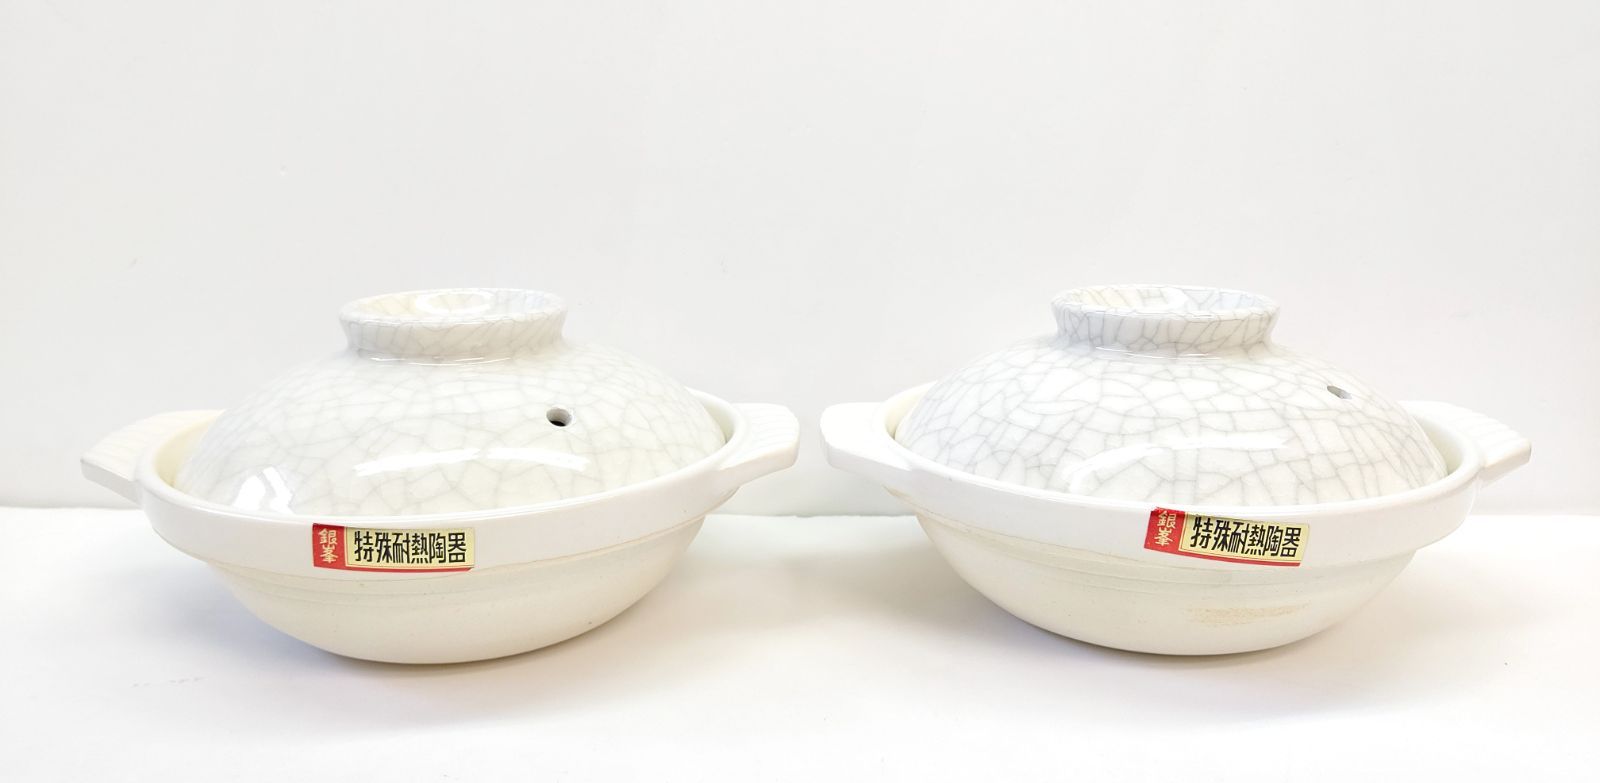 永遠の定番モデル 土鍋 セット TAMAGAWA TOKI 特殊耐熱陶器 銀峰 